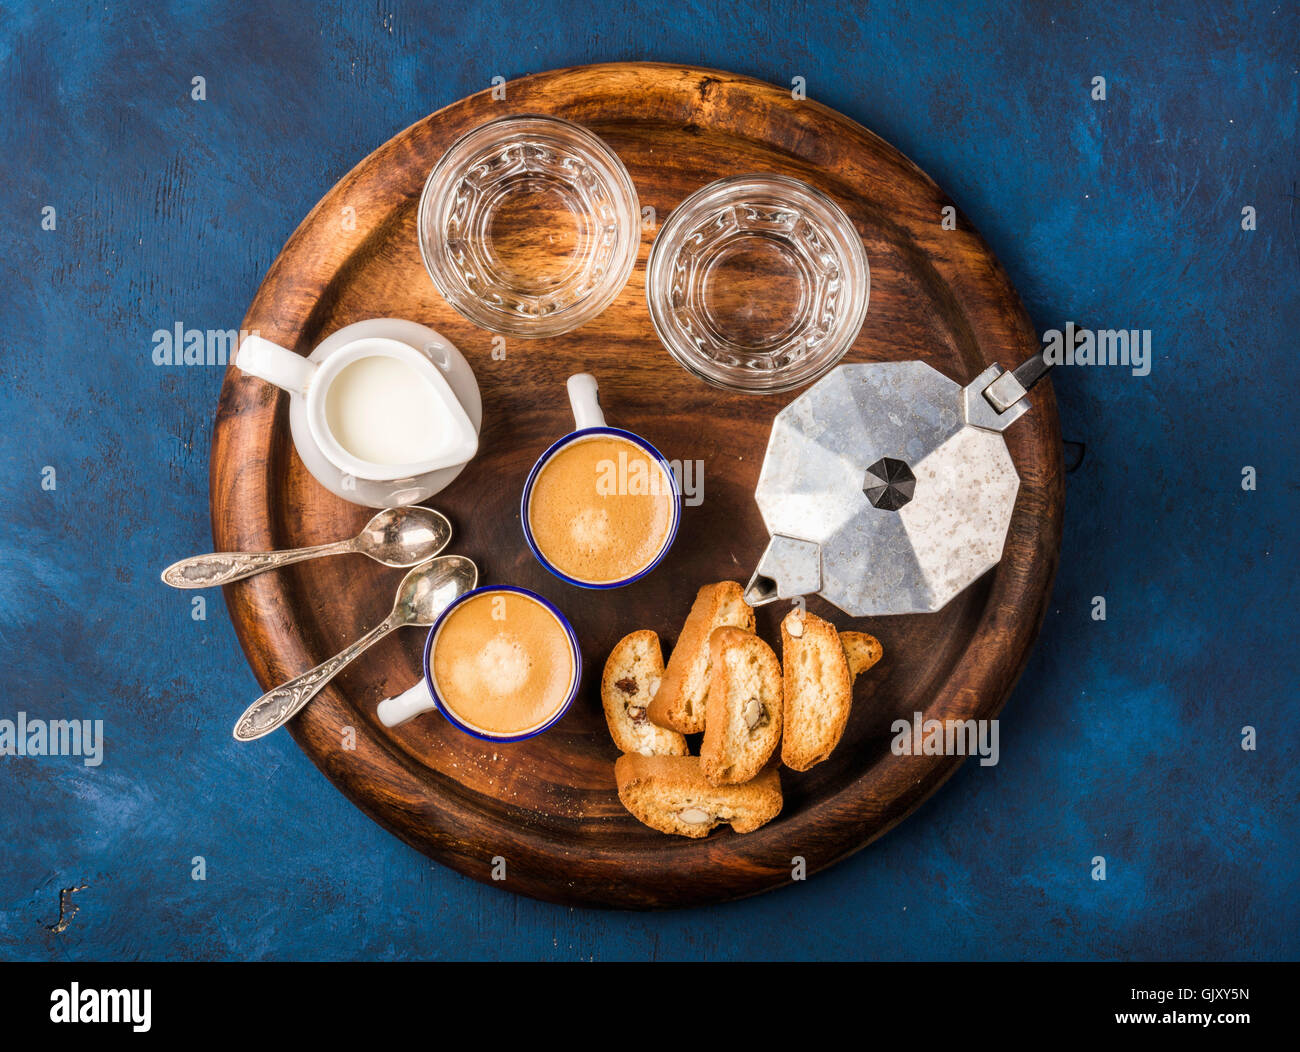 Kaffee Espresso Tassen mit italienischen Cantucci, Kekse und Milch in der Kanne auf hölzernen dienen Runde Board über dunkel blau lackierten plyw Stockfoto